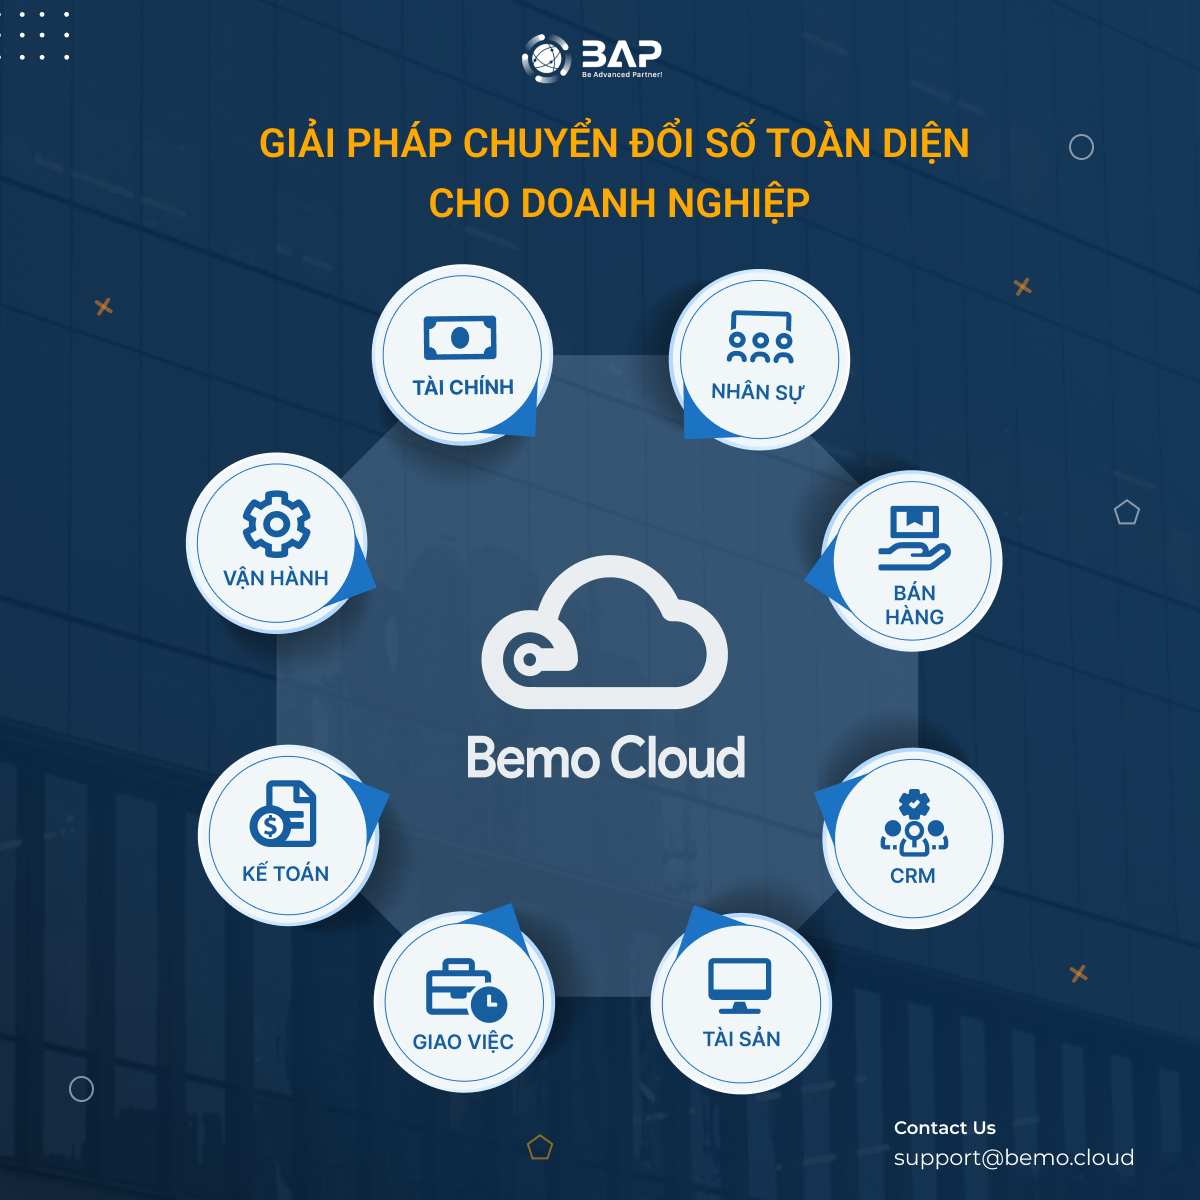 Giải pháp Bemo Cloud dành cho doanh nghiệp